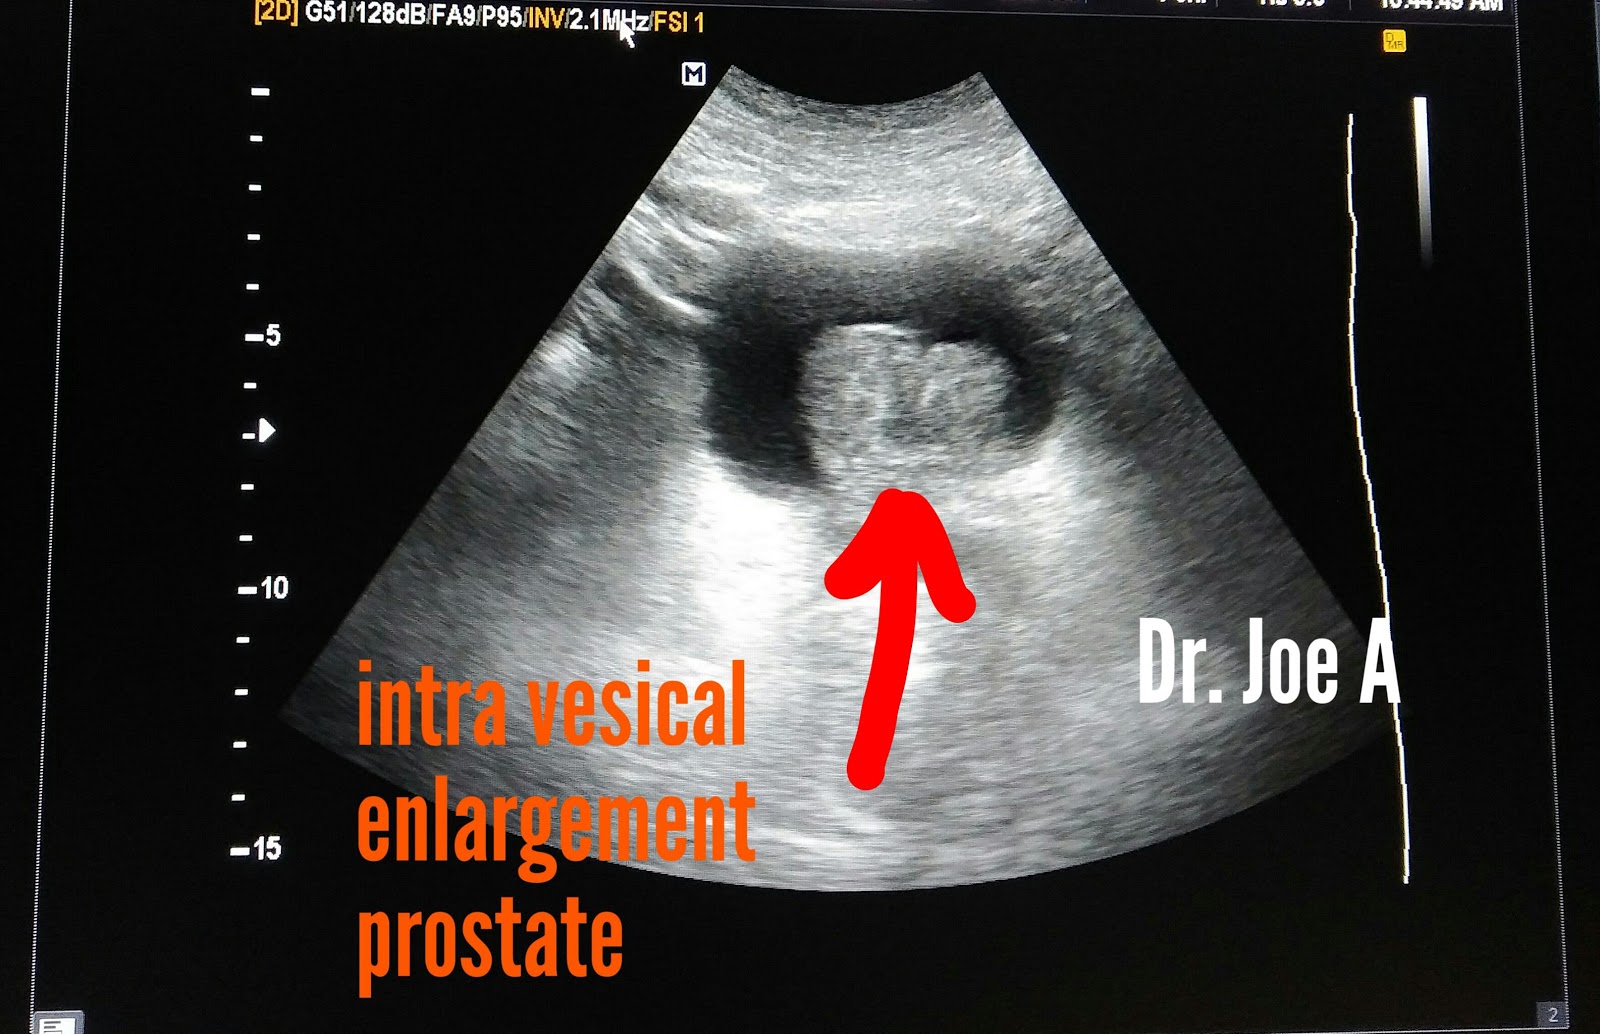 median lobe of prostate ultrasound